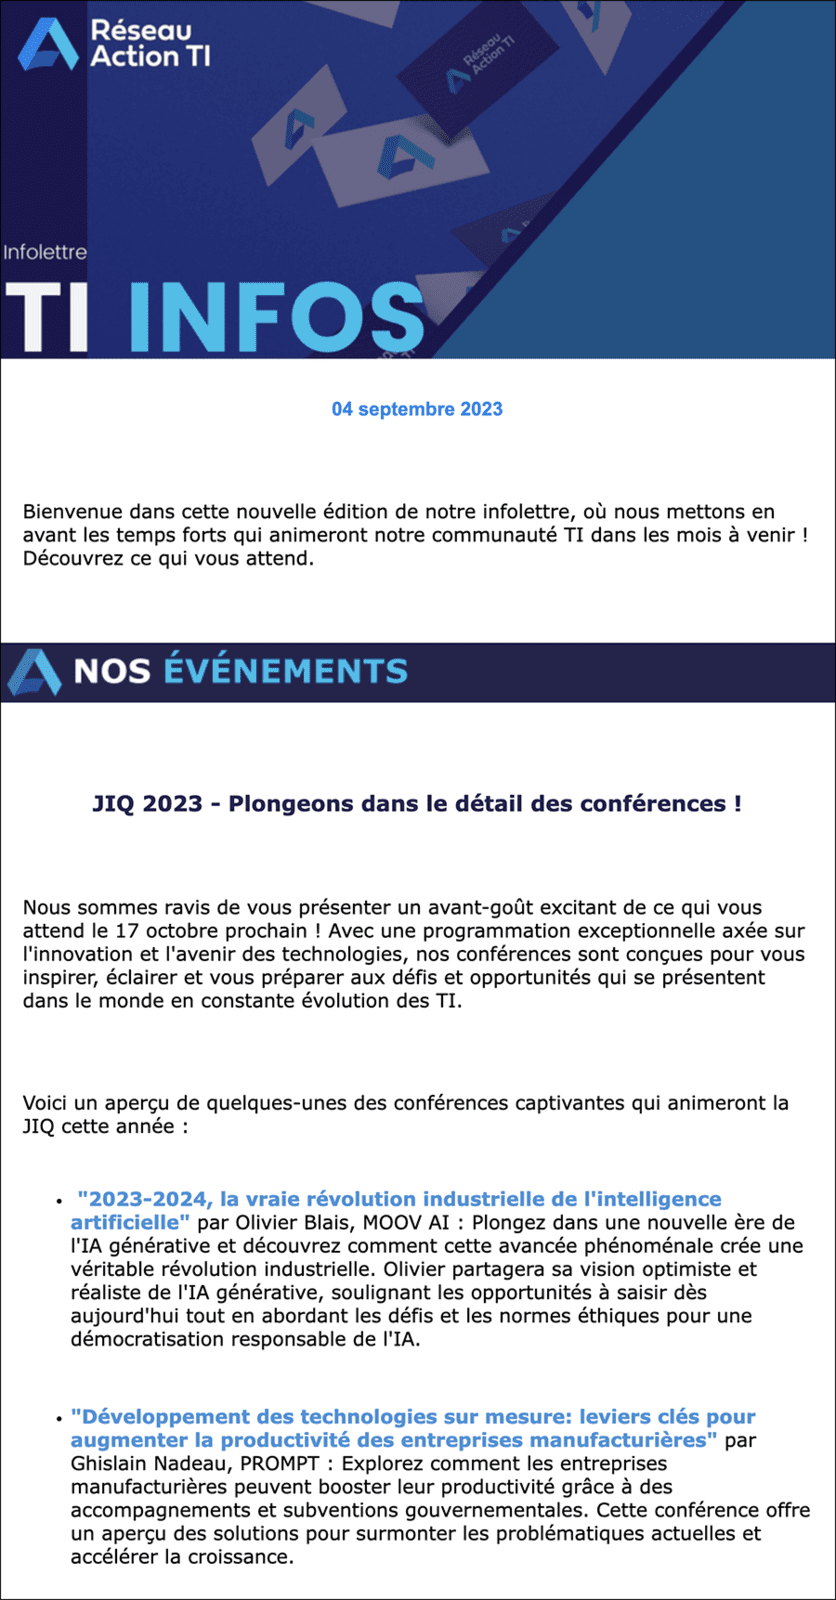 IT INFOS e-newsletter Réseau Action TI